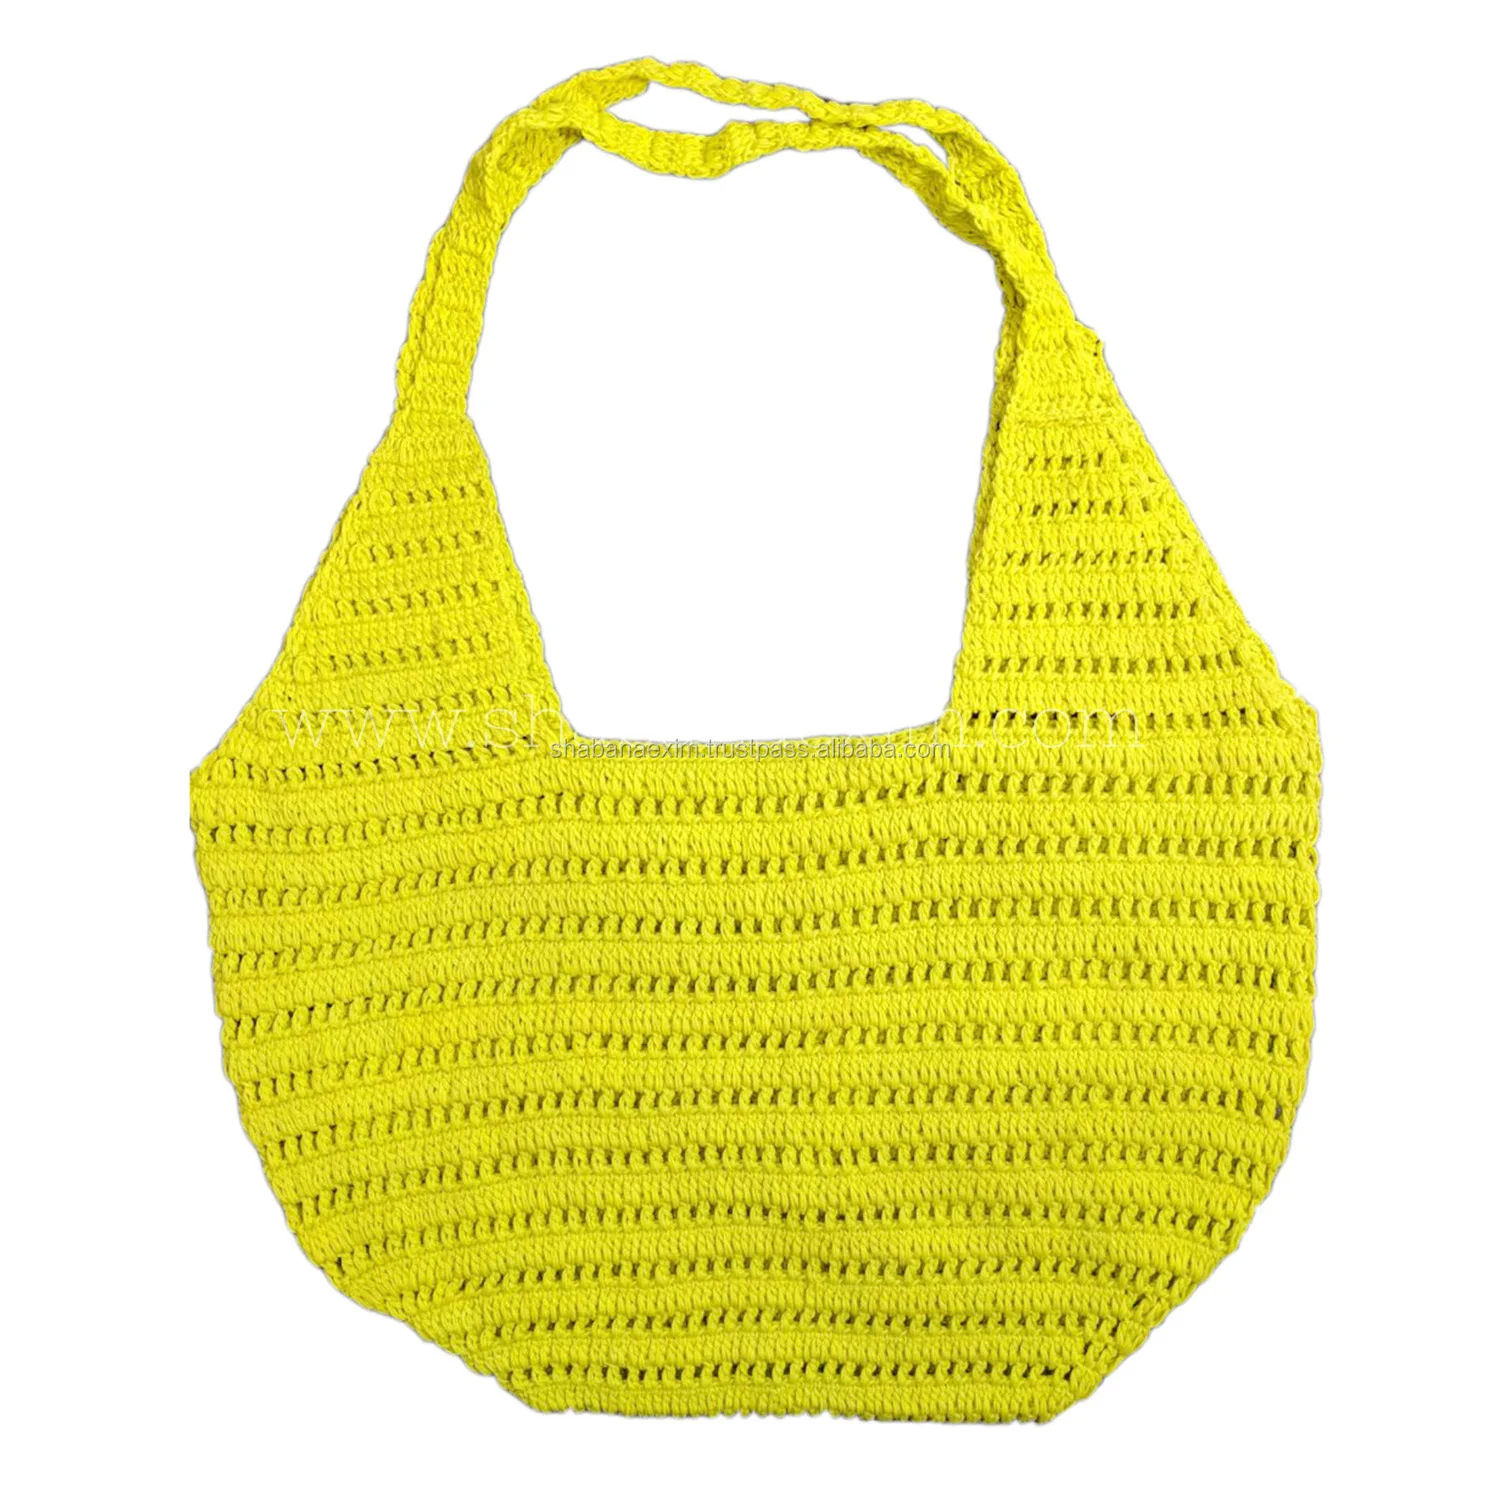 Handmade Women's Crochet Bag - Yellow